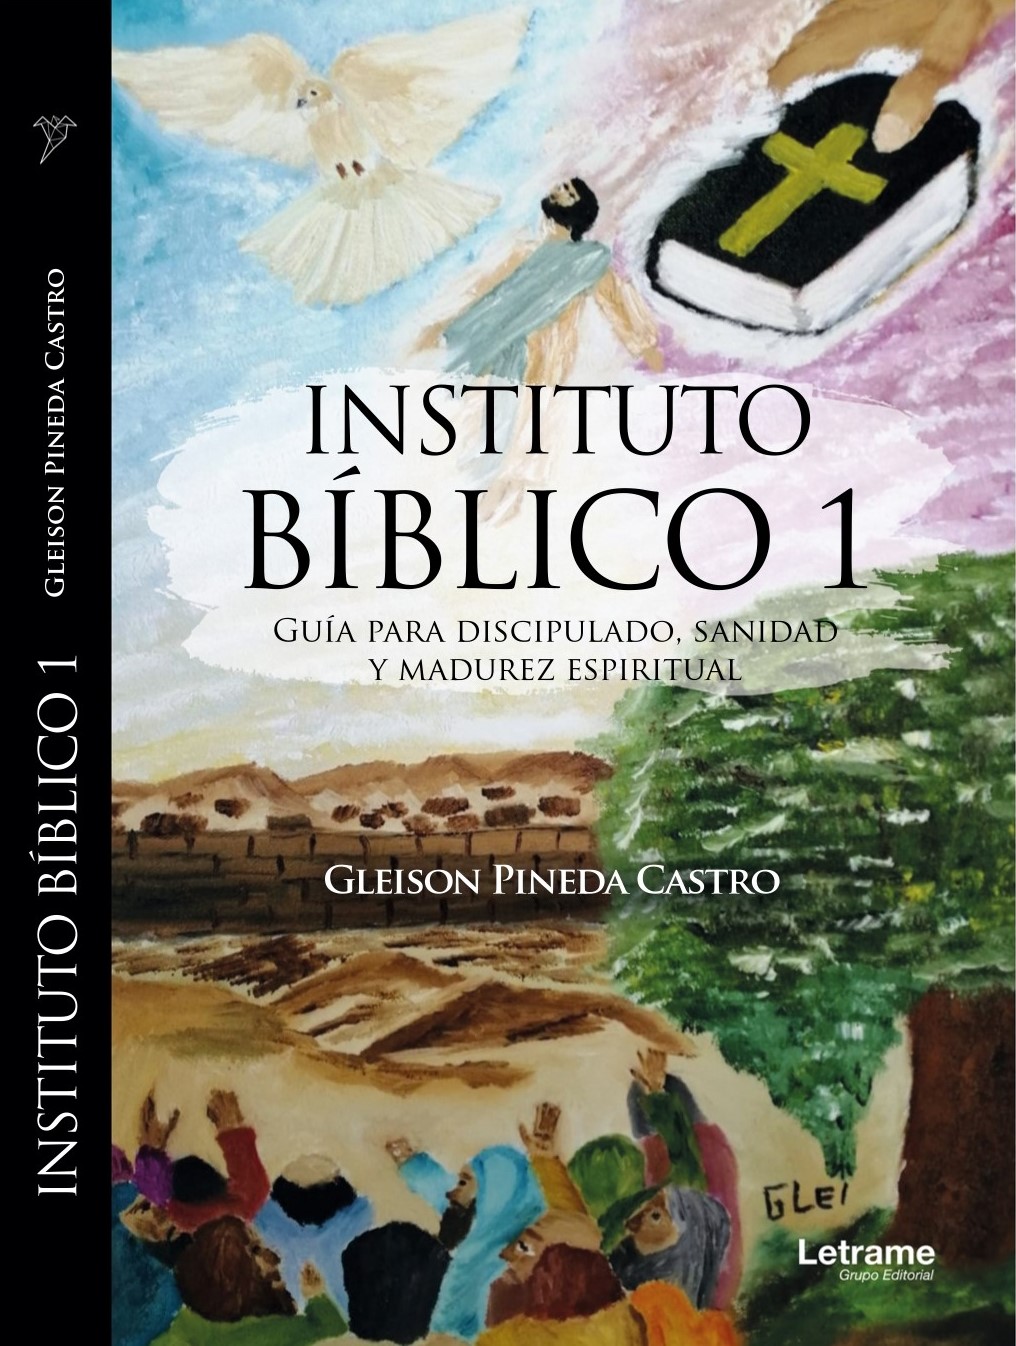 Instituto Bíblico 1